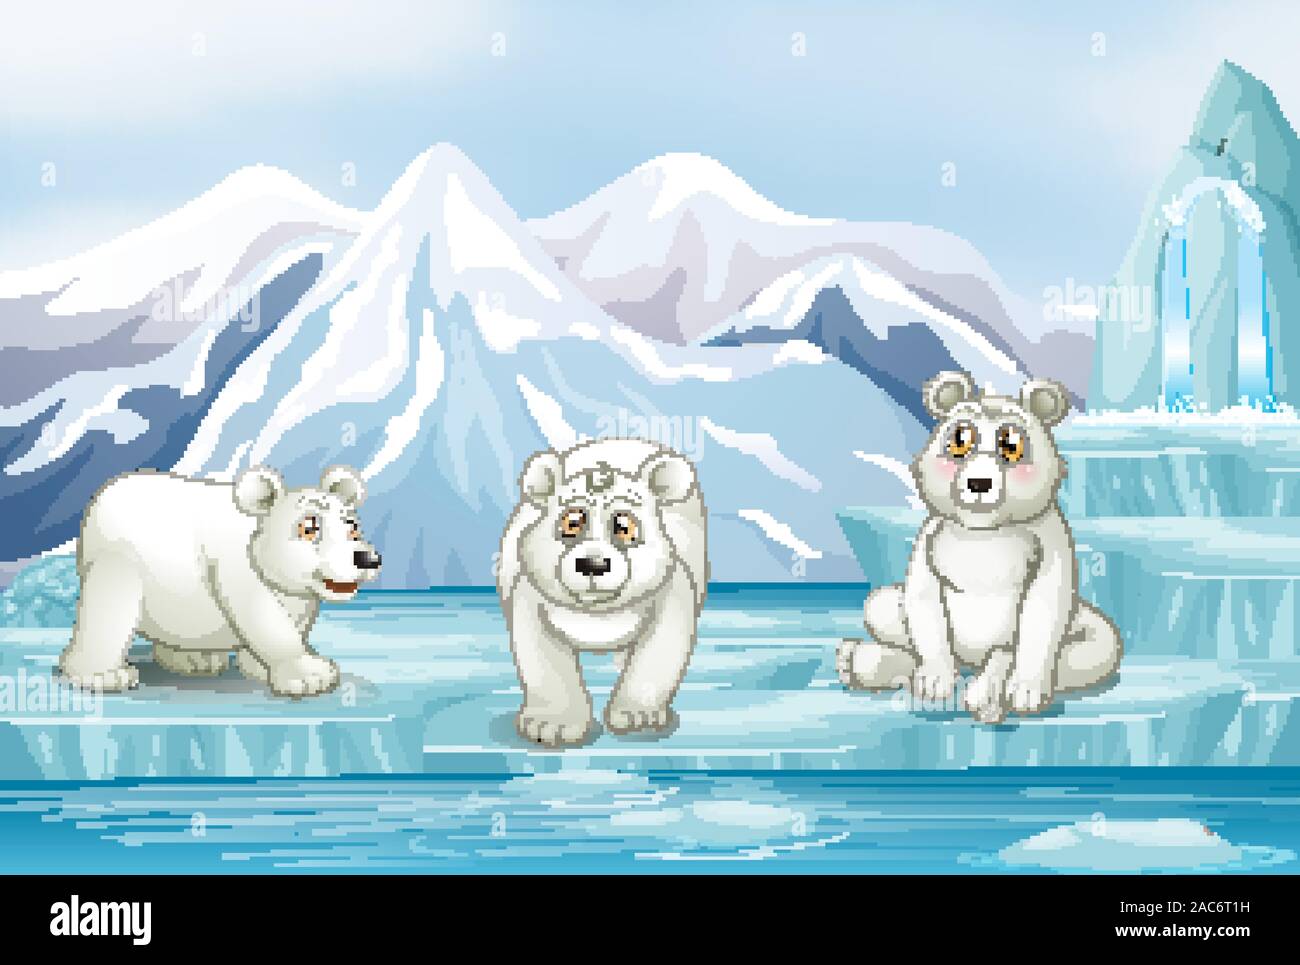 Scene with three polar bears on ice illustration Stock Vector